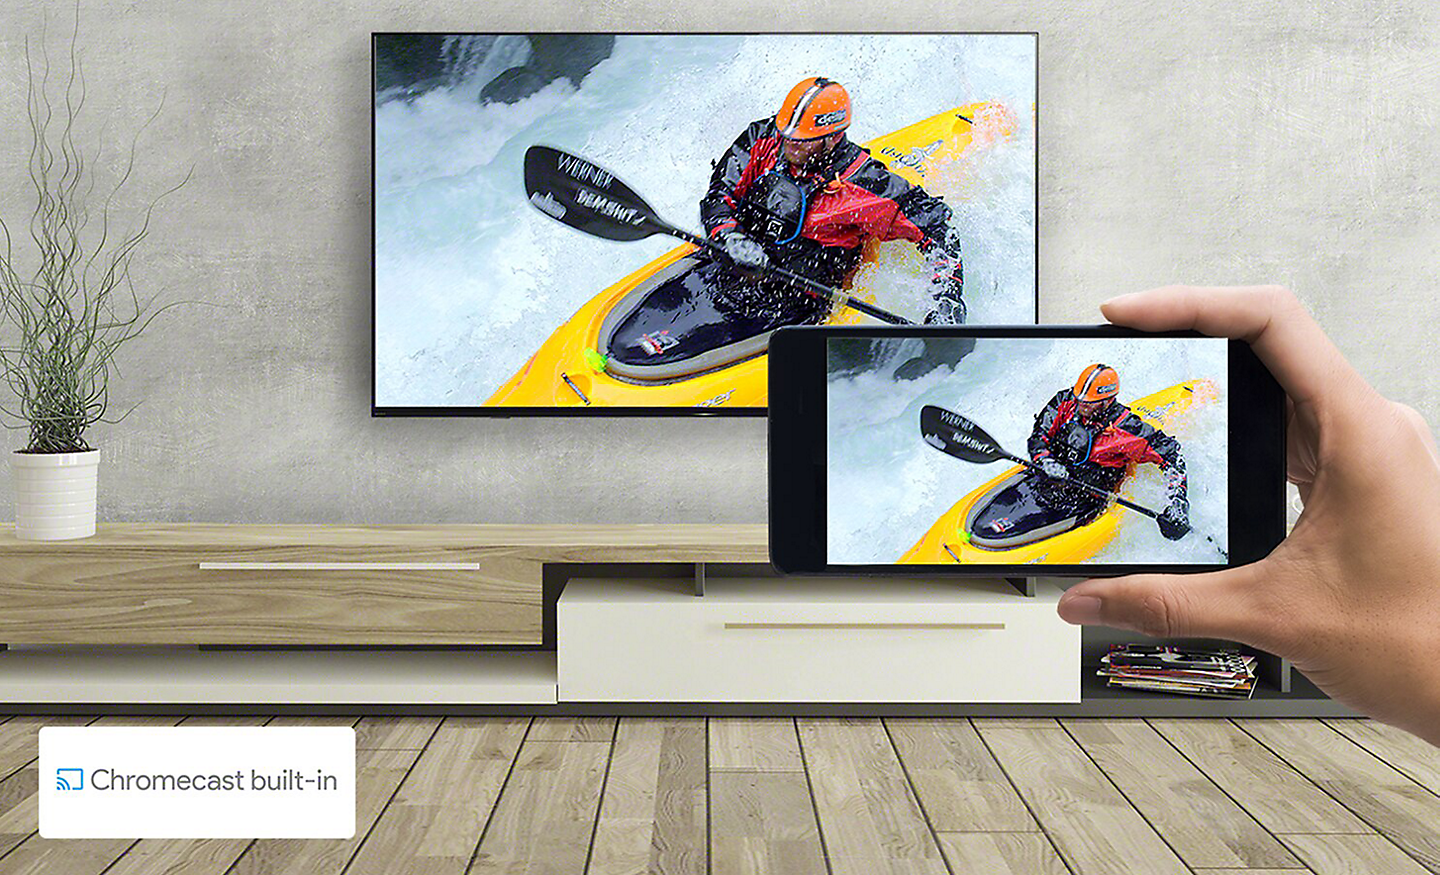 Una mano sostiene un smartphone frente a un televisor instalado en una pared. En ambas pantallas se ve la misma imagen de canotaje. Un logotipo de Chromecast built-in aparece en la parte inferior izquierda.